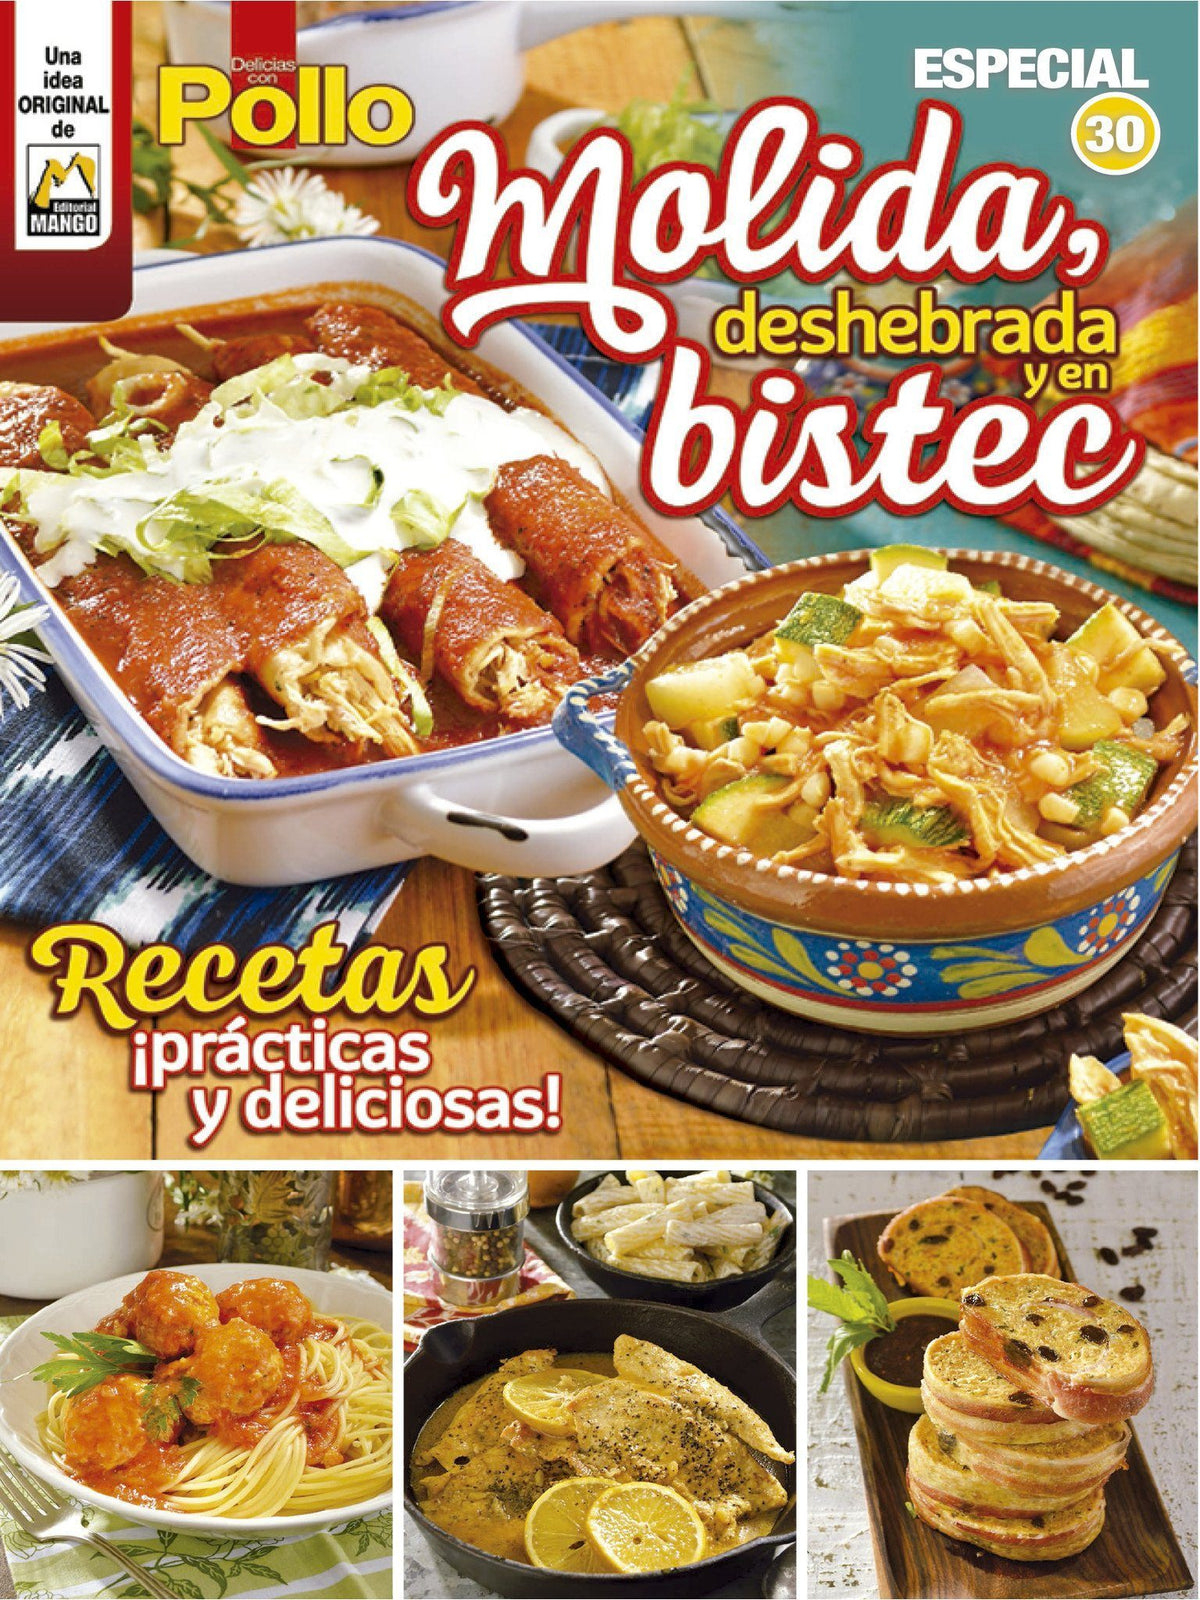 Delicias con Pollo Especial 30 - Molida, deshebrada y en bistec - Formato Digital - ToukanMango